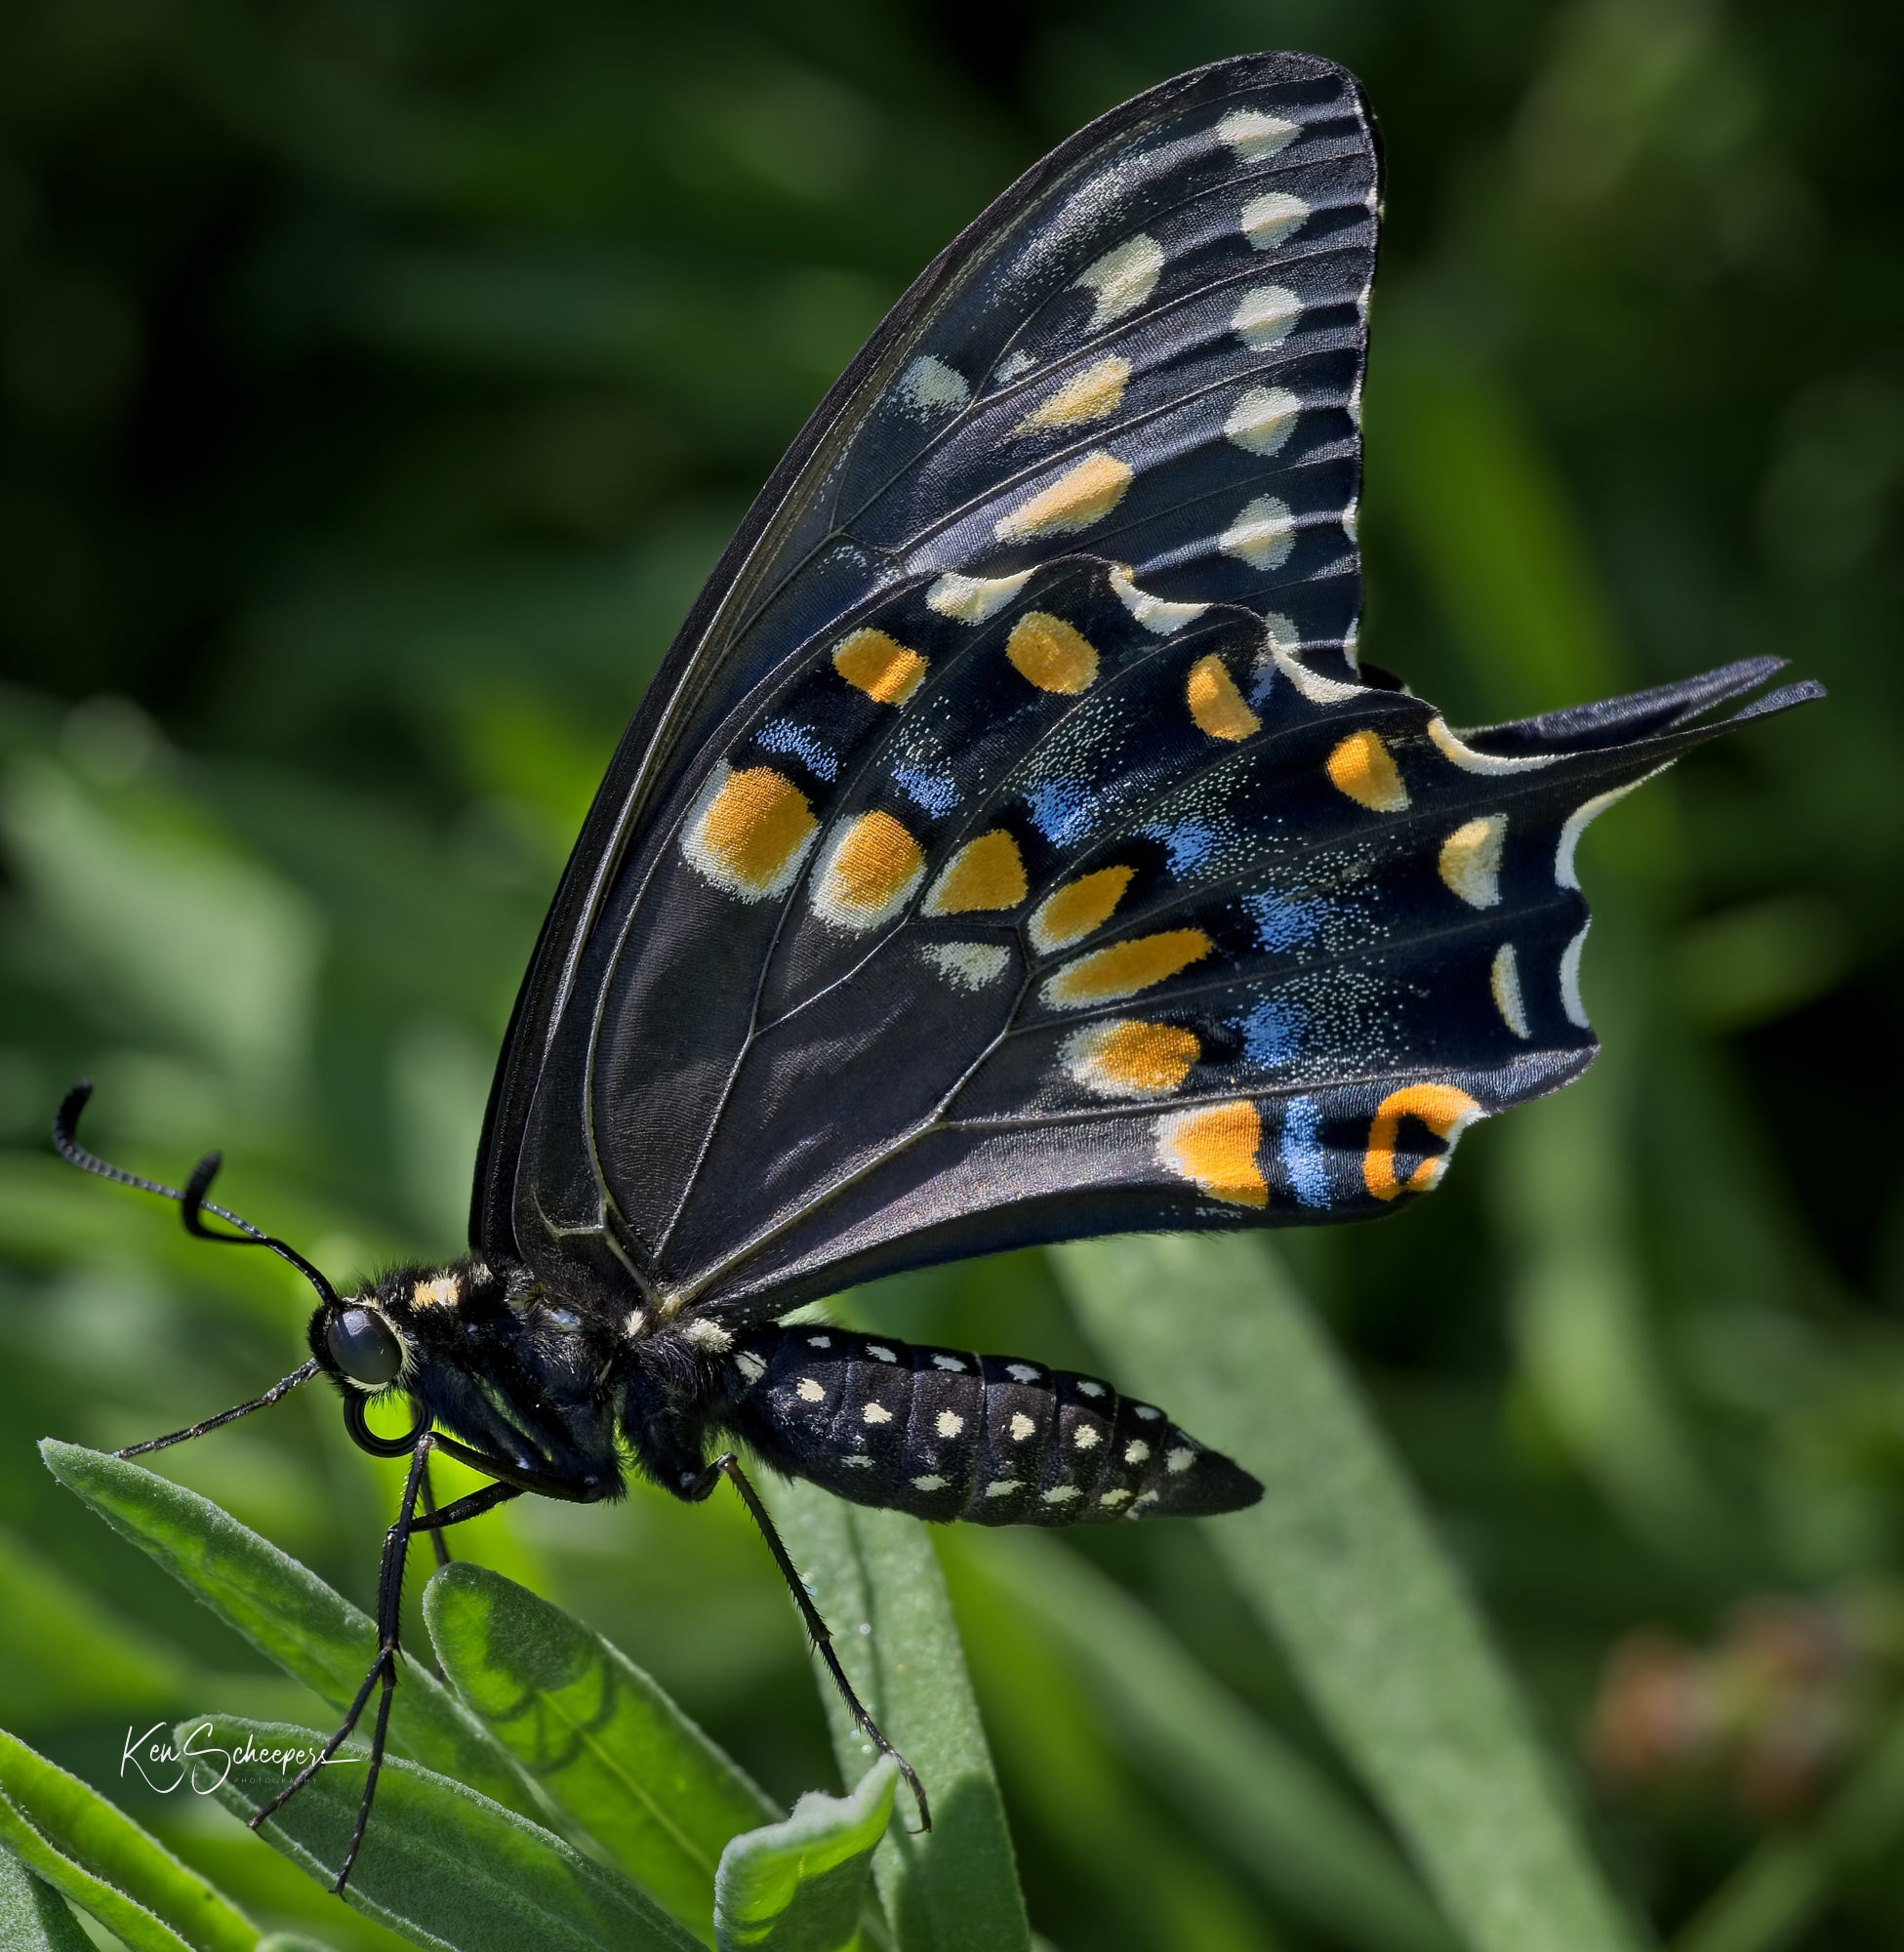 Eastern Black Swallowtail butterfly